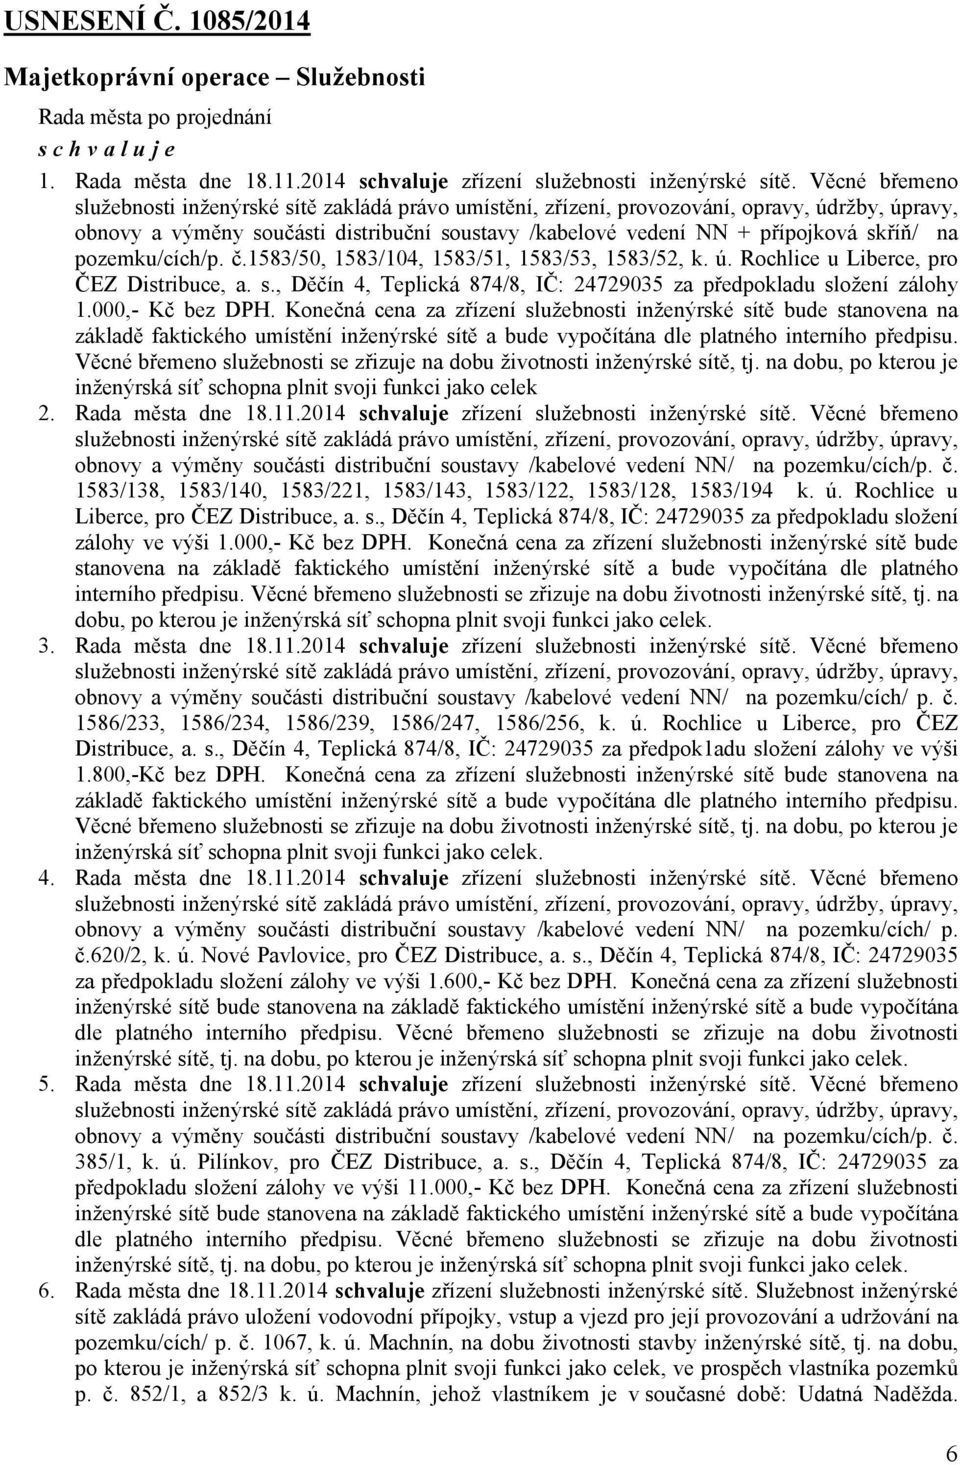 Rochlice u Liberce, pro ČEZ Distribuce, a. s., Děčín 4, Teplická 874/8, IČ: 24729035 za předpokladu složení zálohy 1.000,- Kč bez DPH.